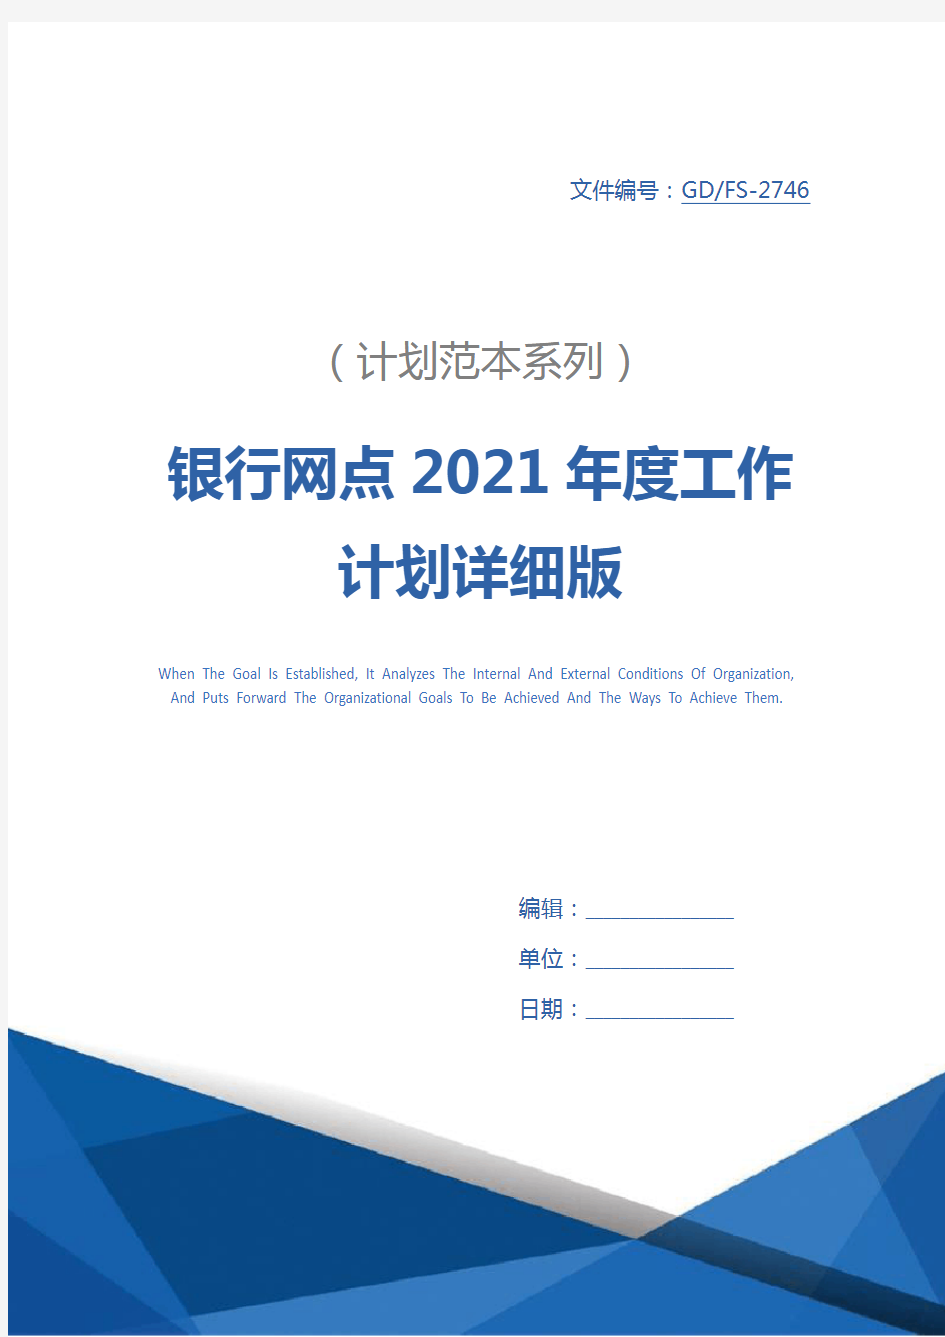 银行网点2021年度工作计划详细版_1